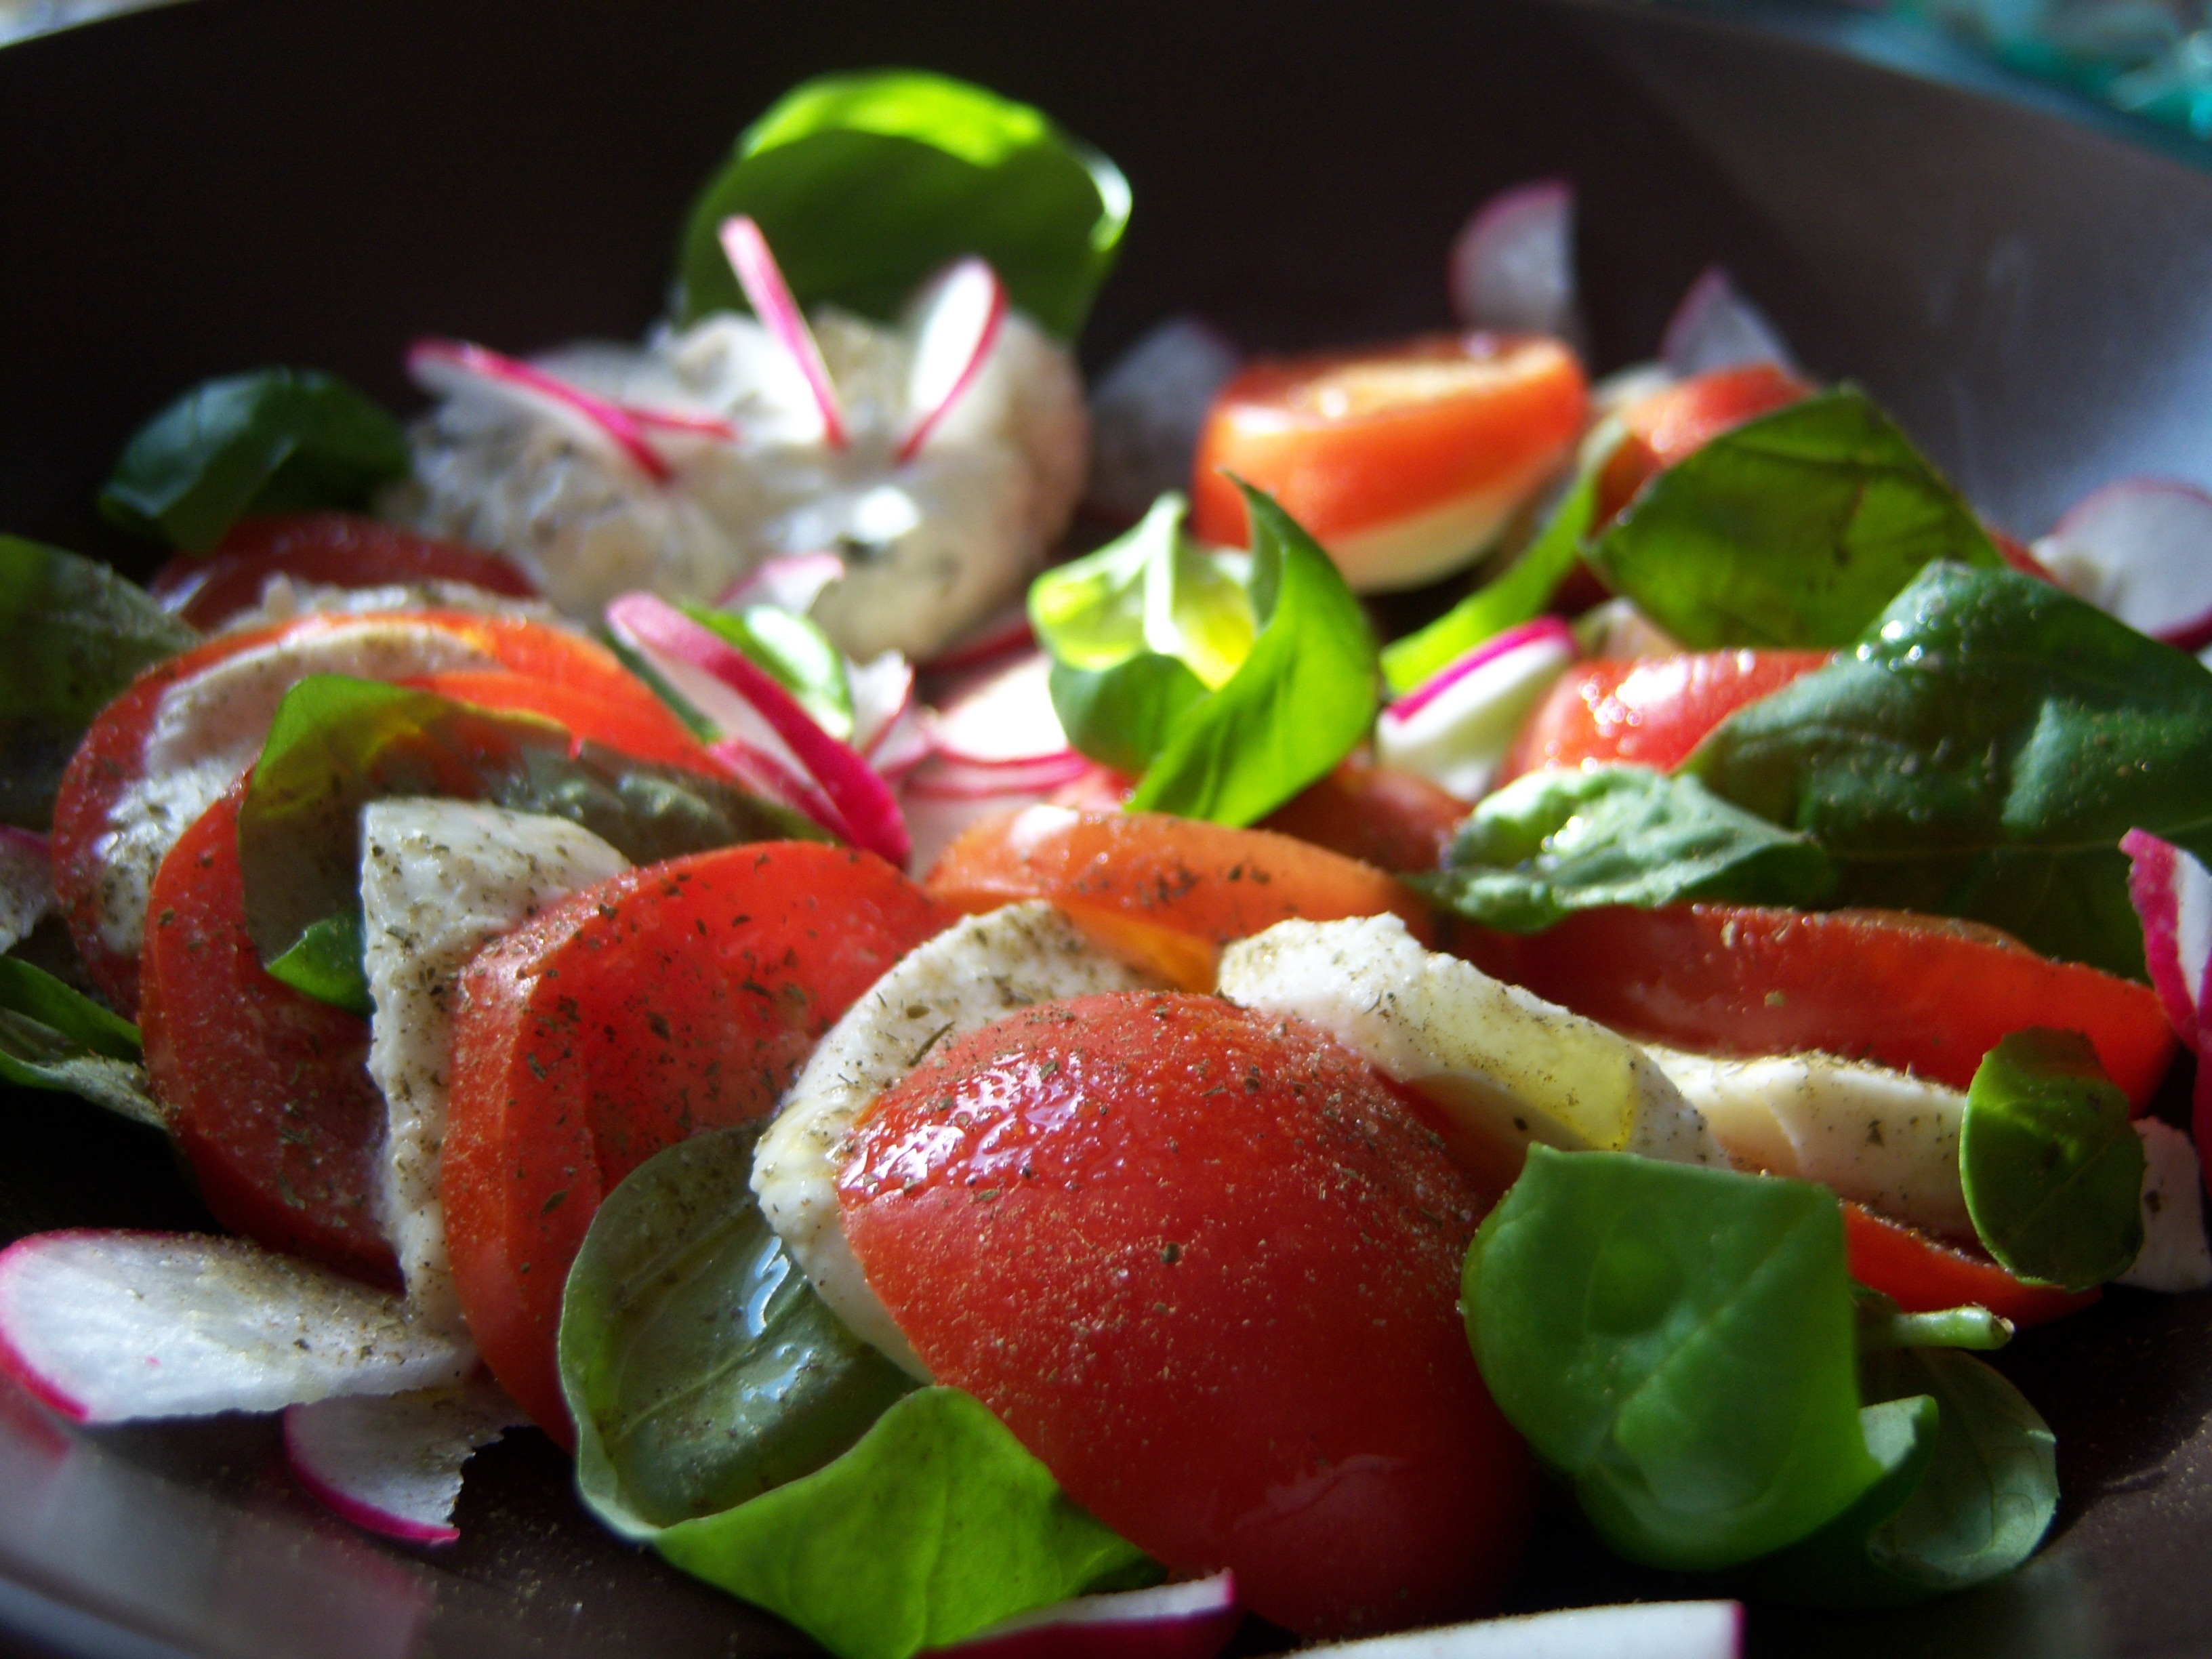 Top 10 Healthy Salad Recipes